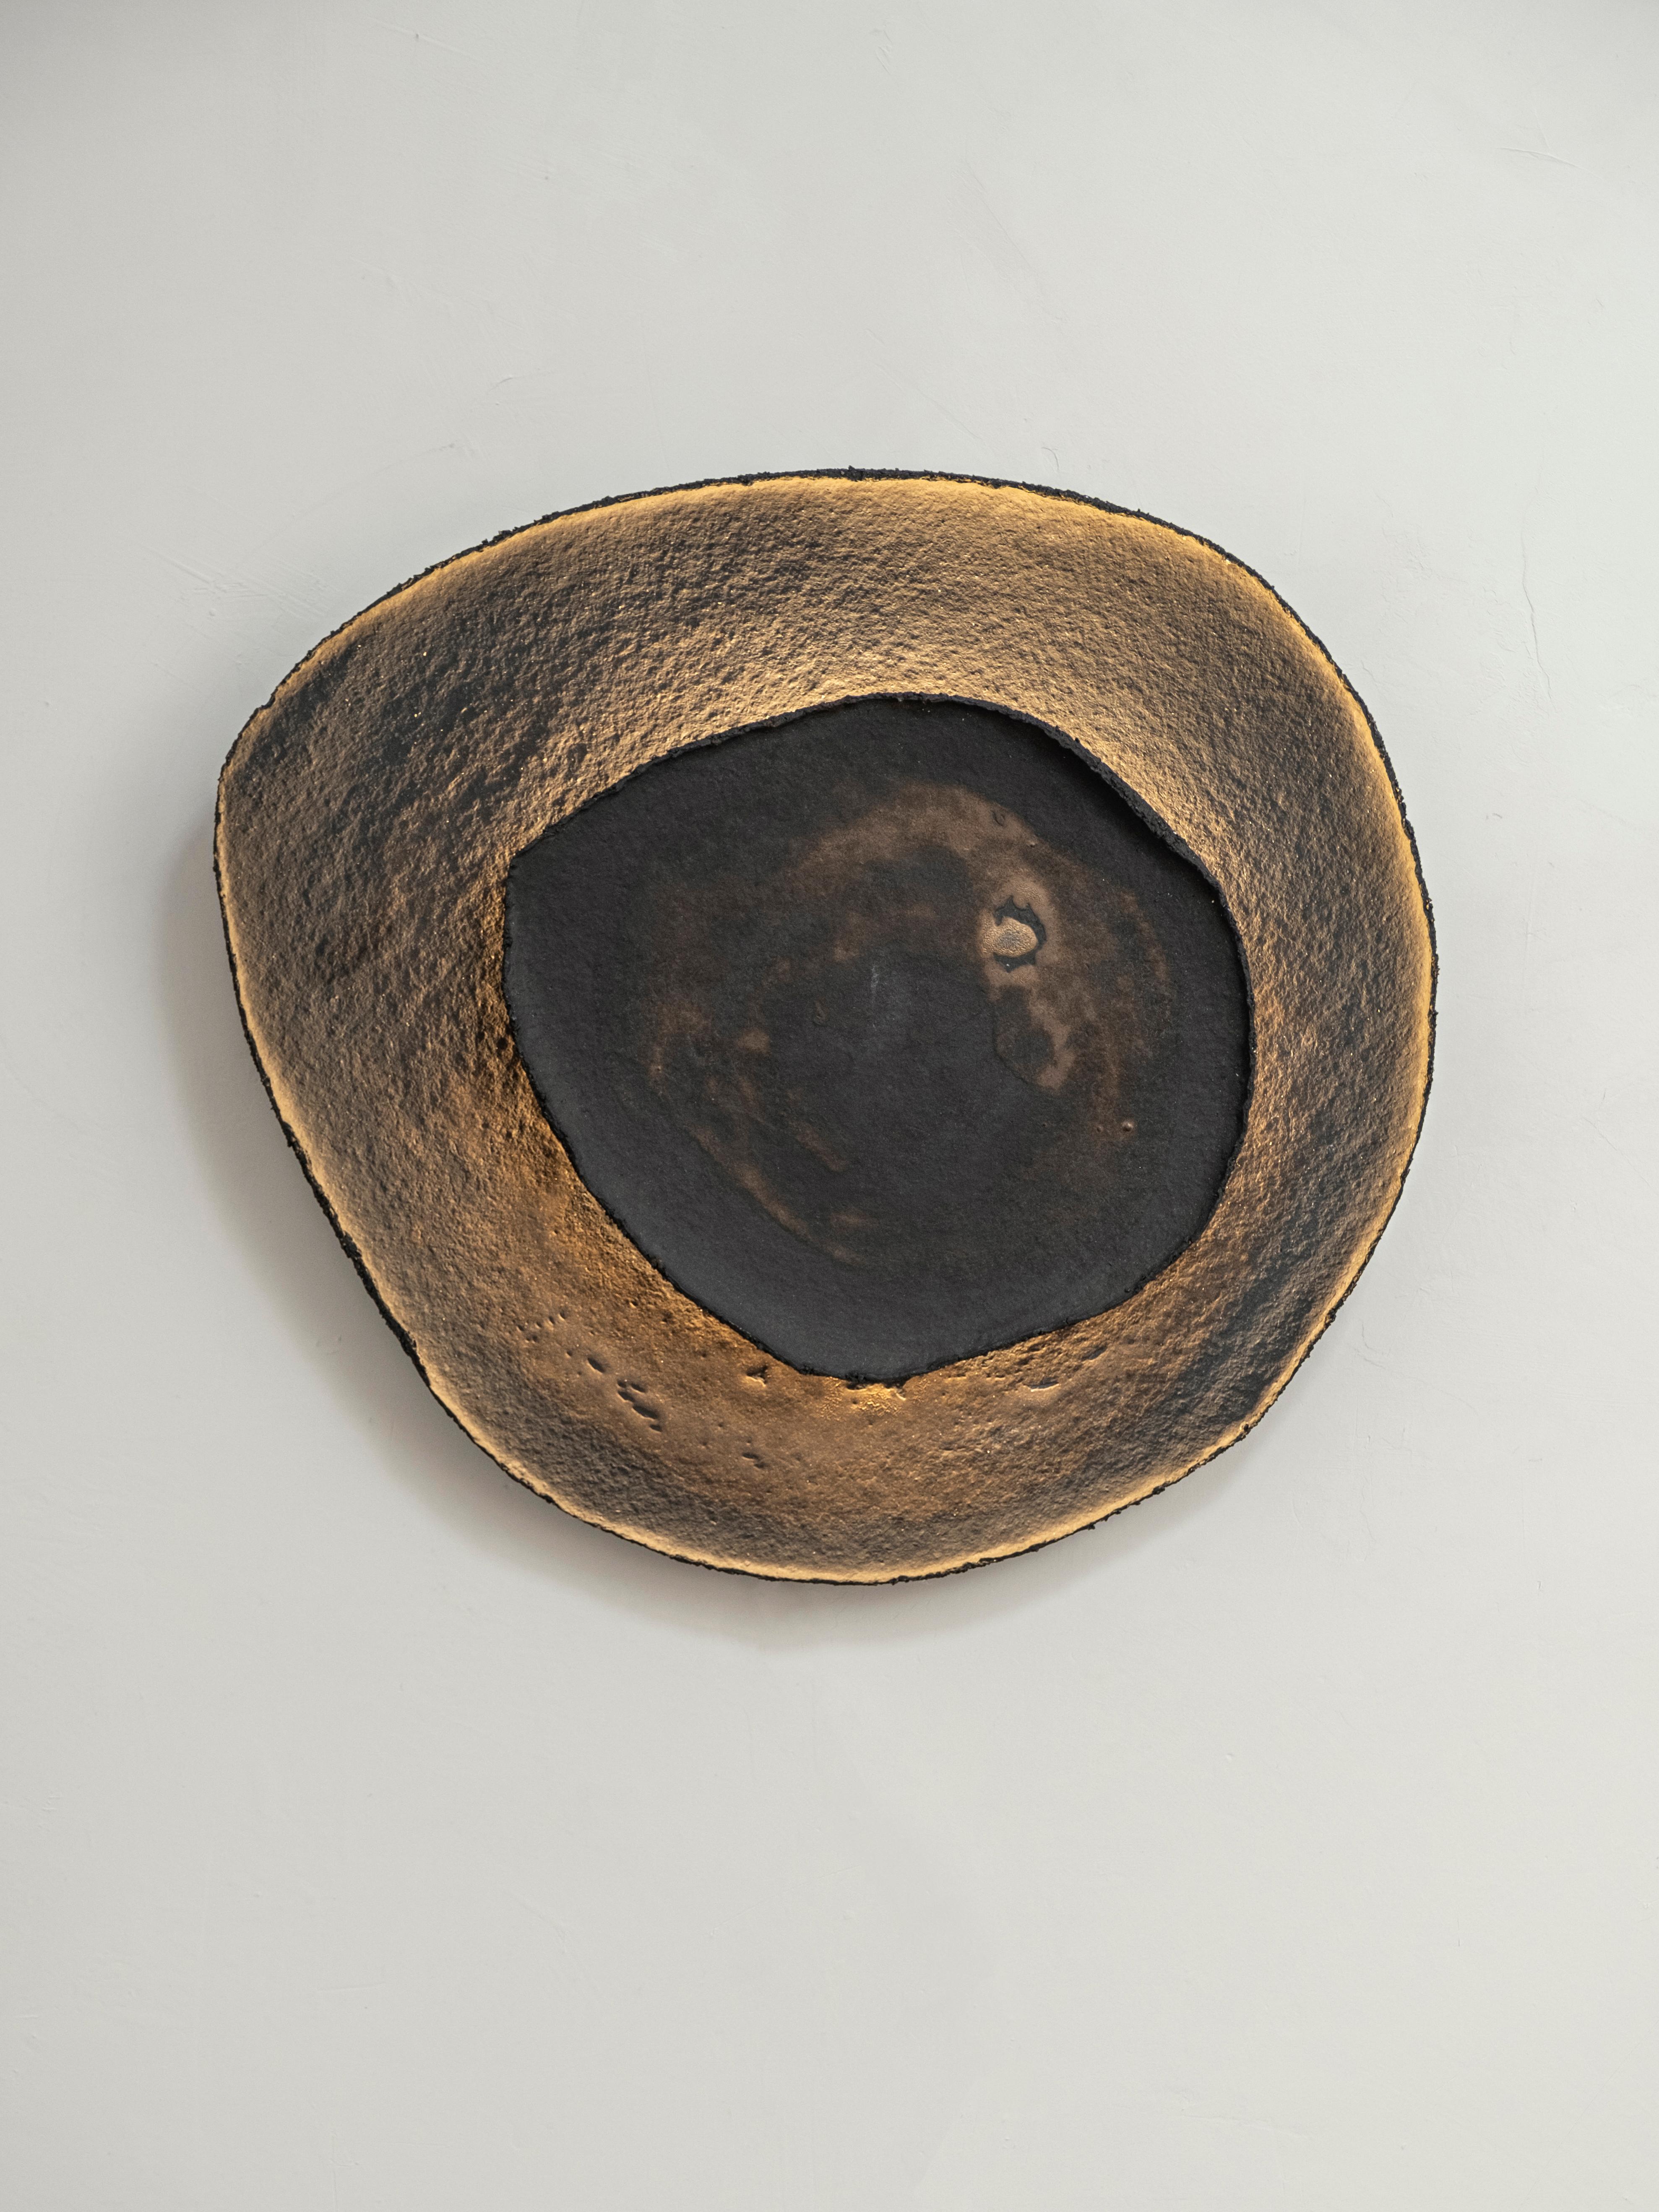 Esche #11 wandleuchte von Margaux Leycuras
Einzigartig, signiert und nummeriert
Abmessungen: Ø44 x H48 cm.
MATERIAL: Keramik, schwarzes Steingut mit brünierter Goldglasur.
Das Werk ist signiert, nummeriert und wird mit einem Echtheitszertifikat